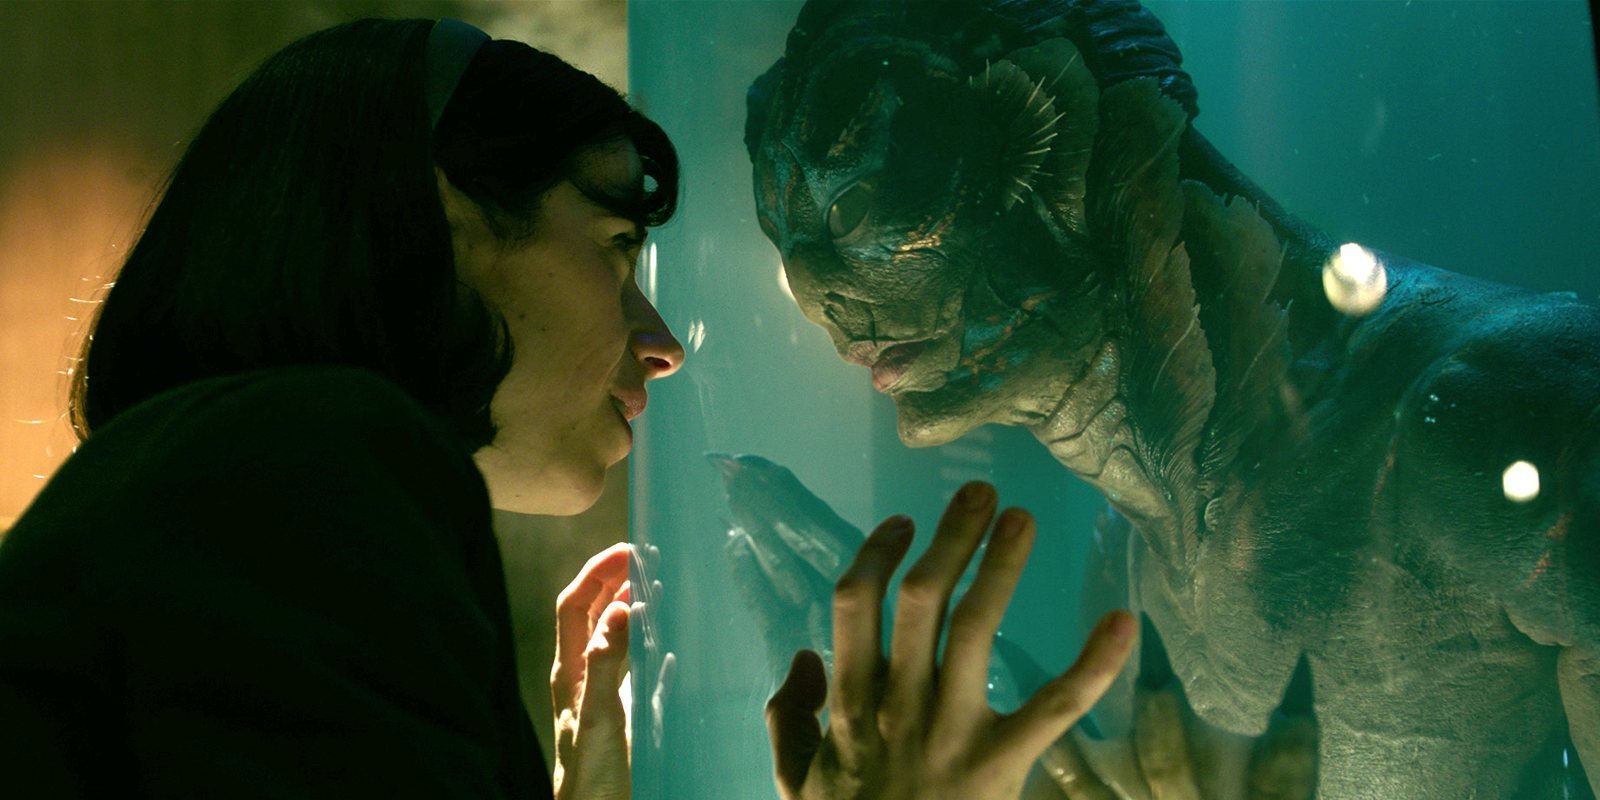 Guillermo del Toro explica cómo son realmente los personajes de 'La forma del agua'